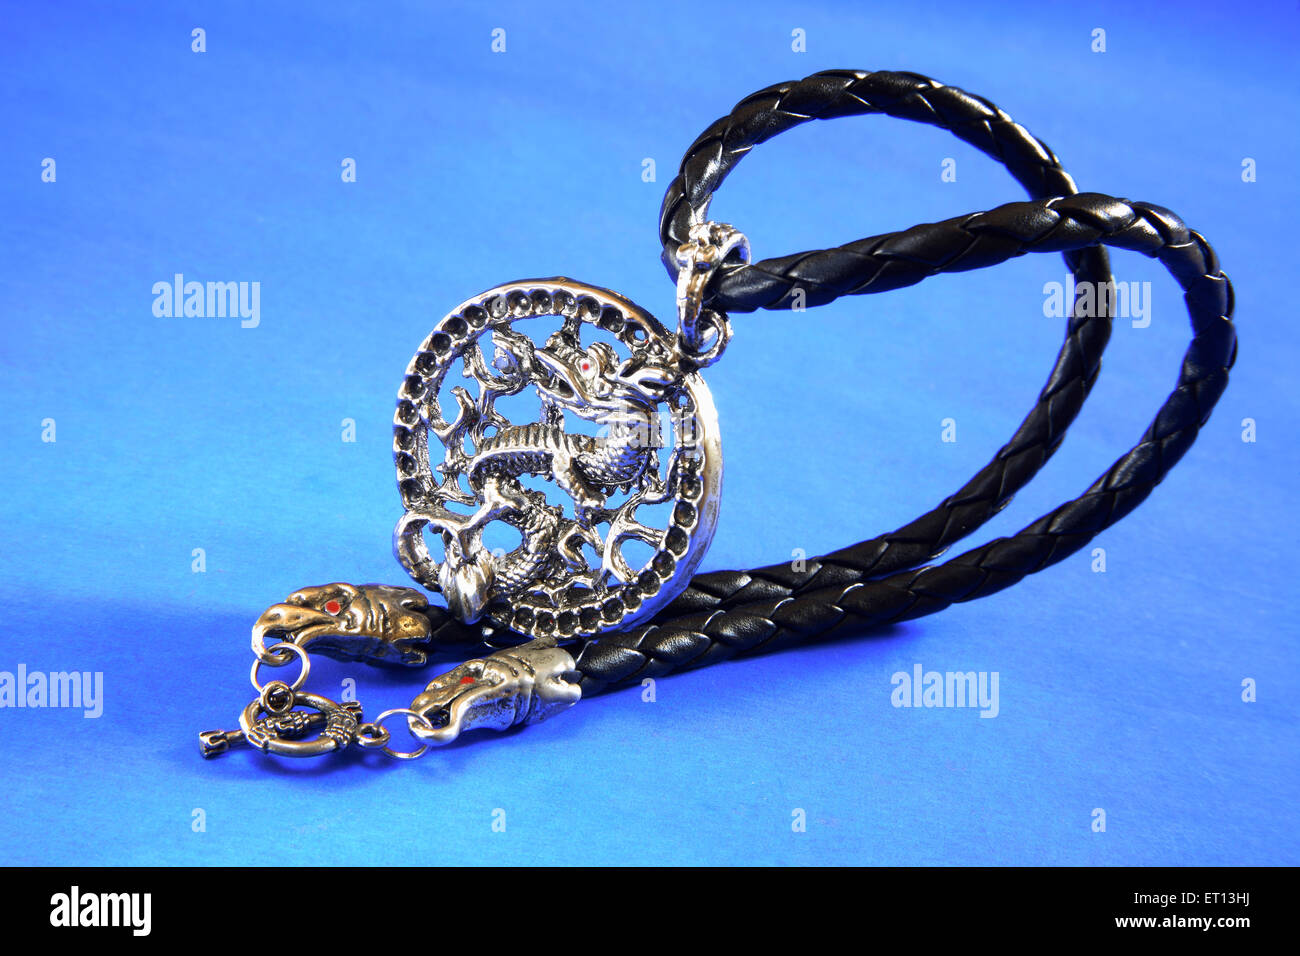 Collier suspendu amulette avec motif dragon chinois sur fond bleu Banque D'Images